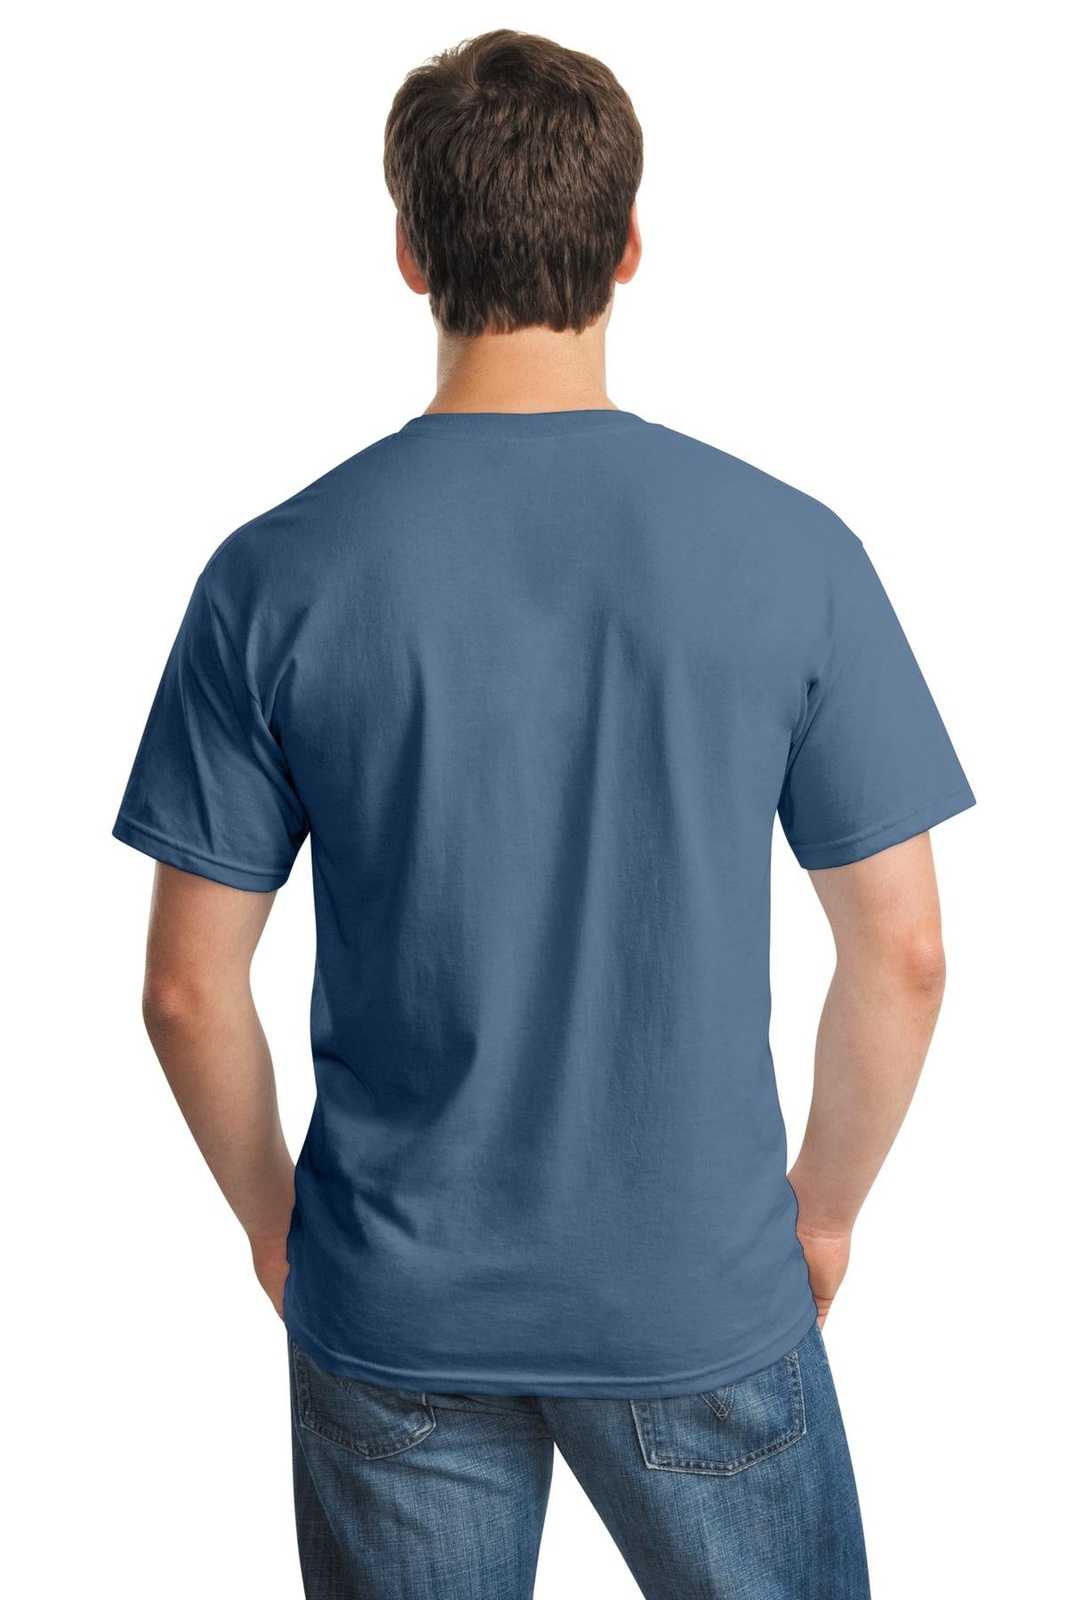 Gildan 5000 Heavy Cotton 100% Cotton T-Shirt - Indigo Blue - HIT a Double